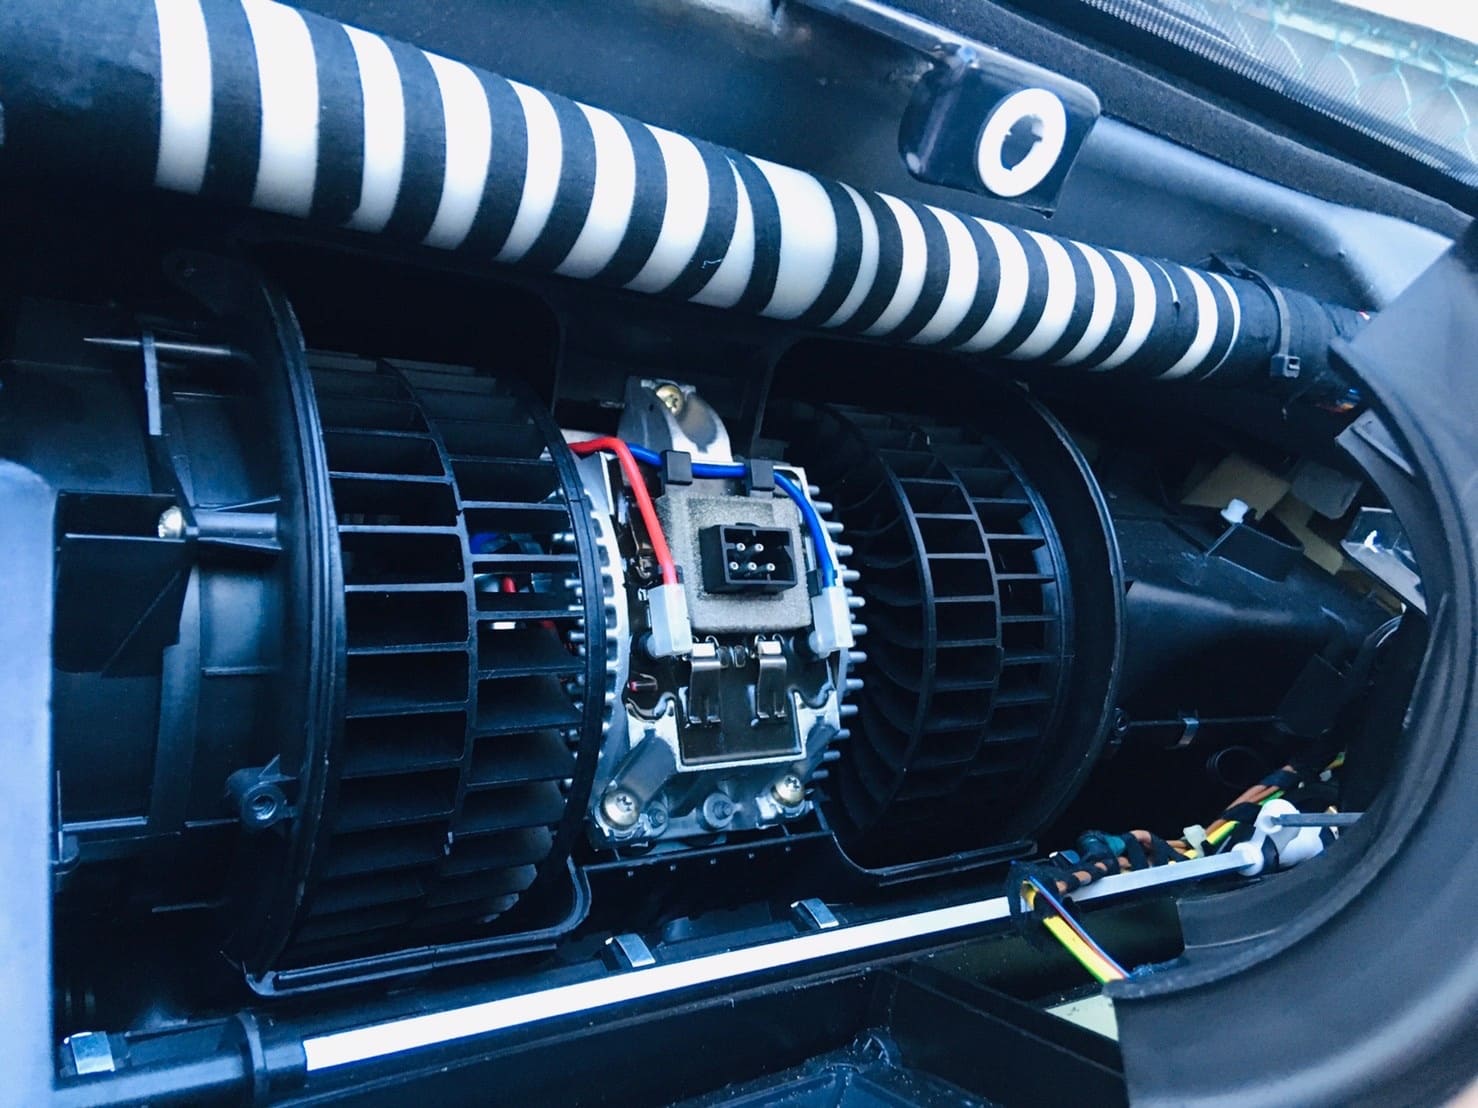 【BMWの修理/点検】BMW E38 7シリーズ 750iLのエアコンの故障